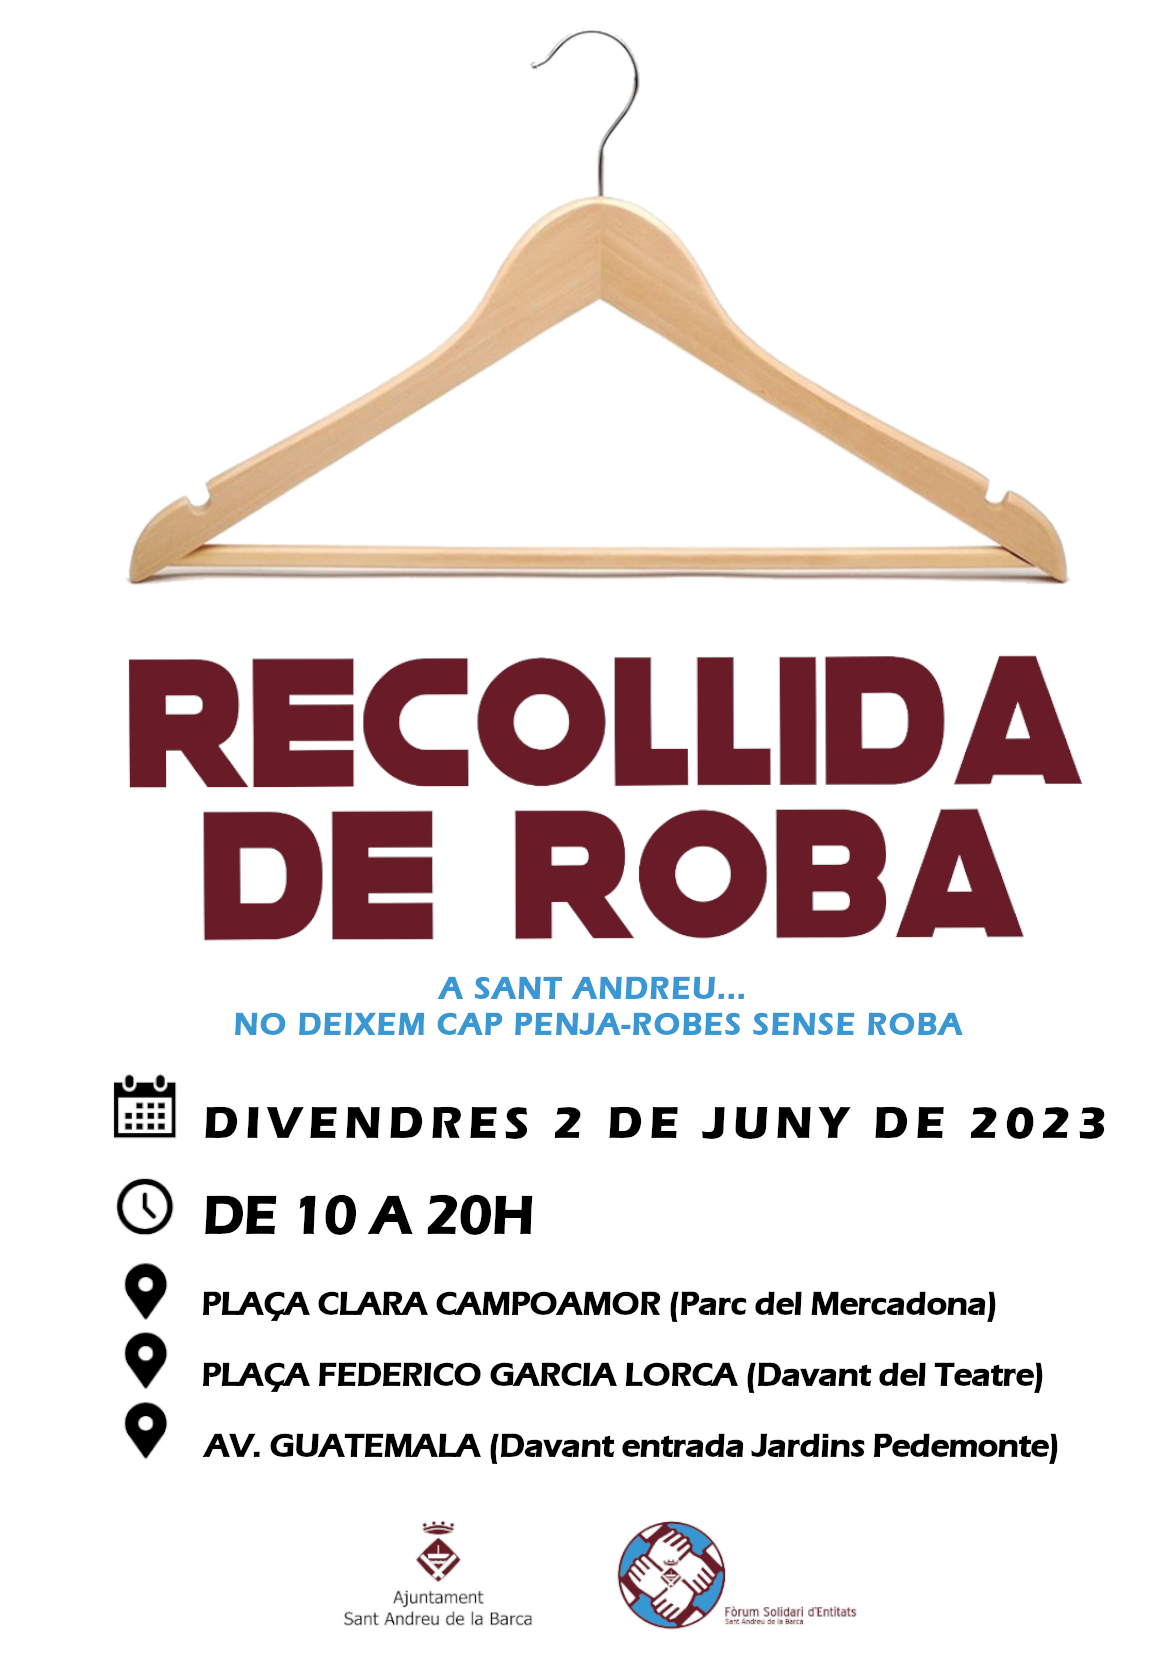 Imatge de la notícia: Sant Andreu de la Barca organitza una nova campanya de recollida de roba